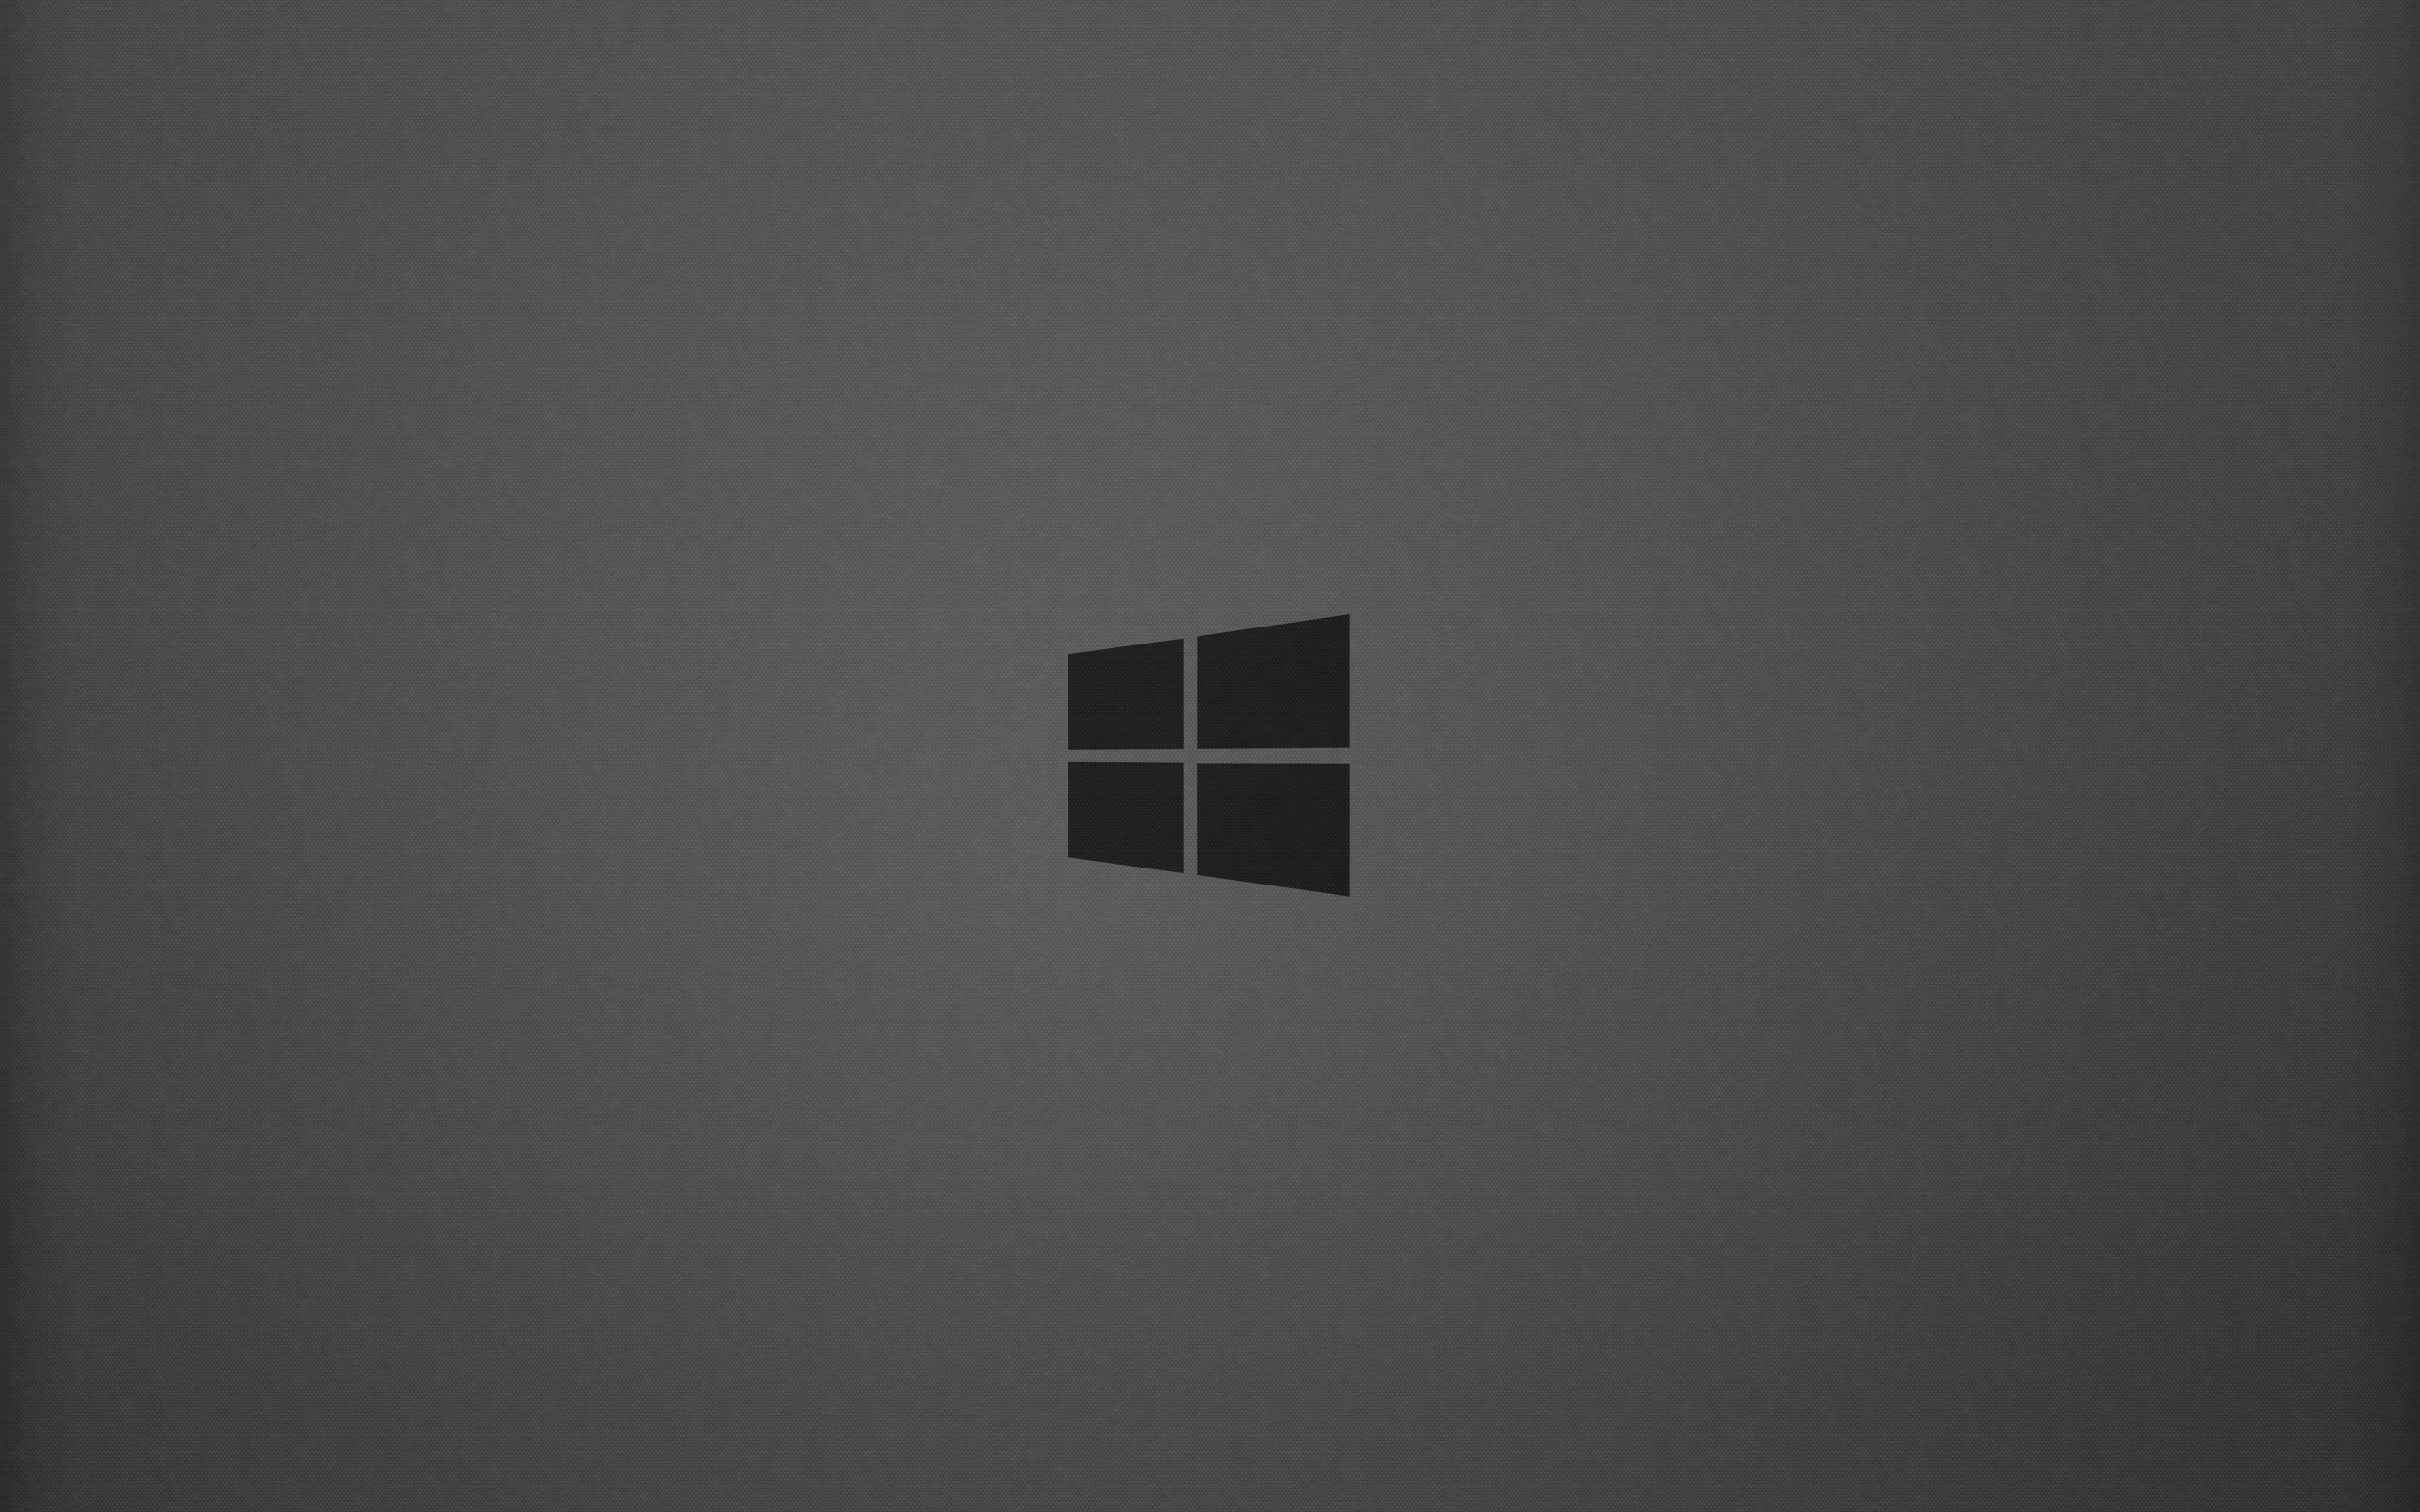 2560x1600 Windows Background Clean by Alyama123 Windows Background Clean by Alyama123